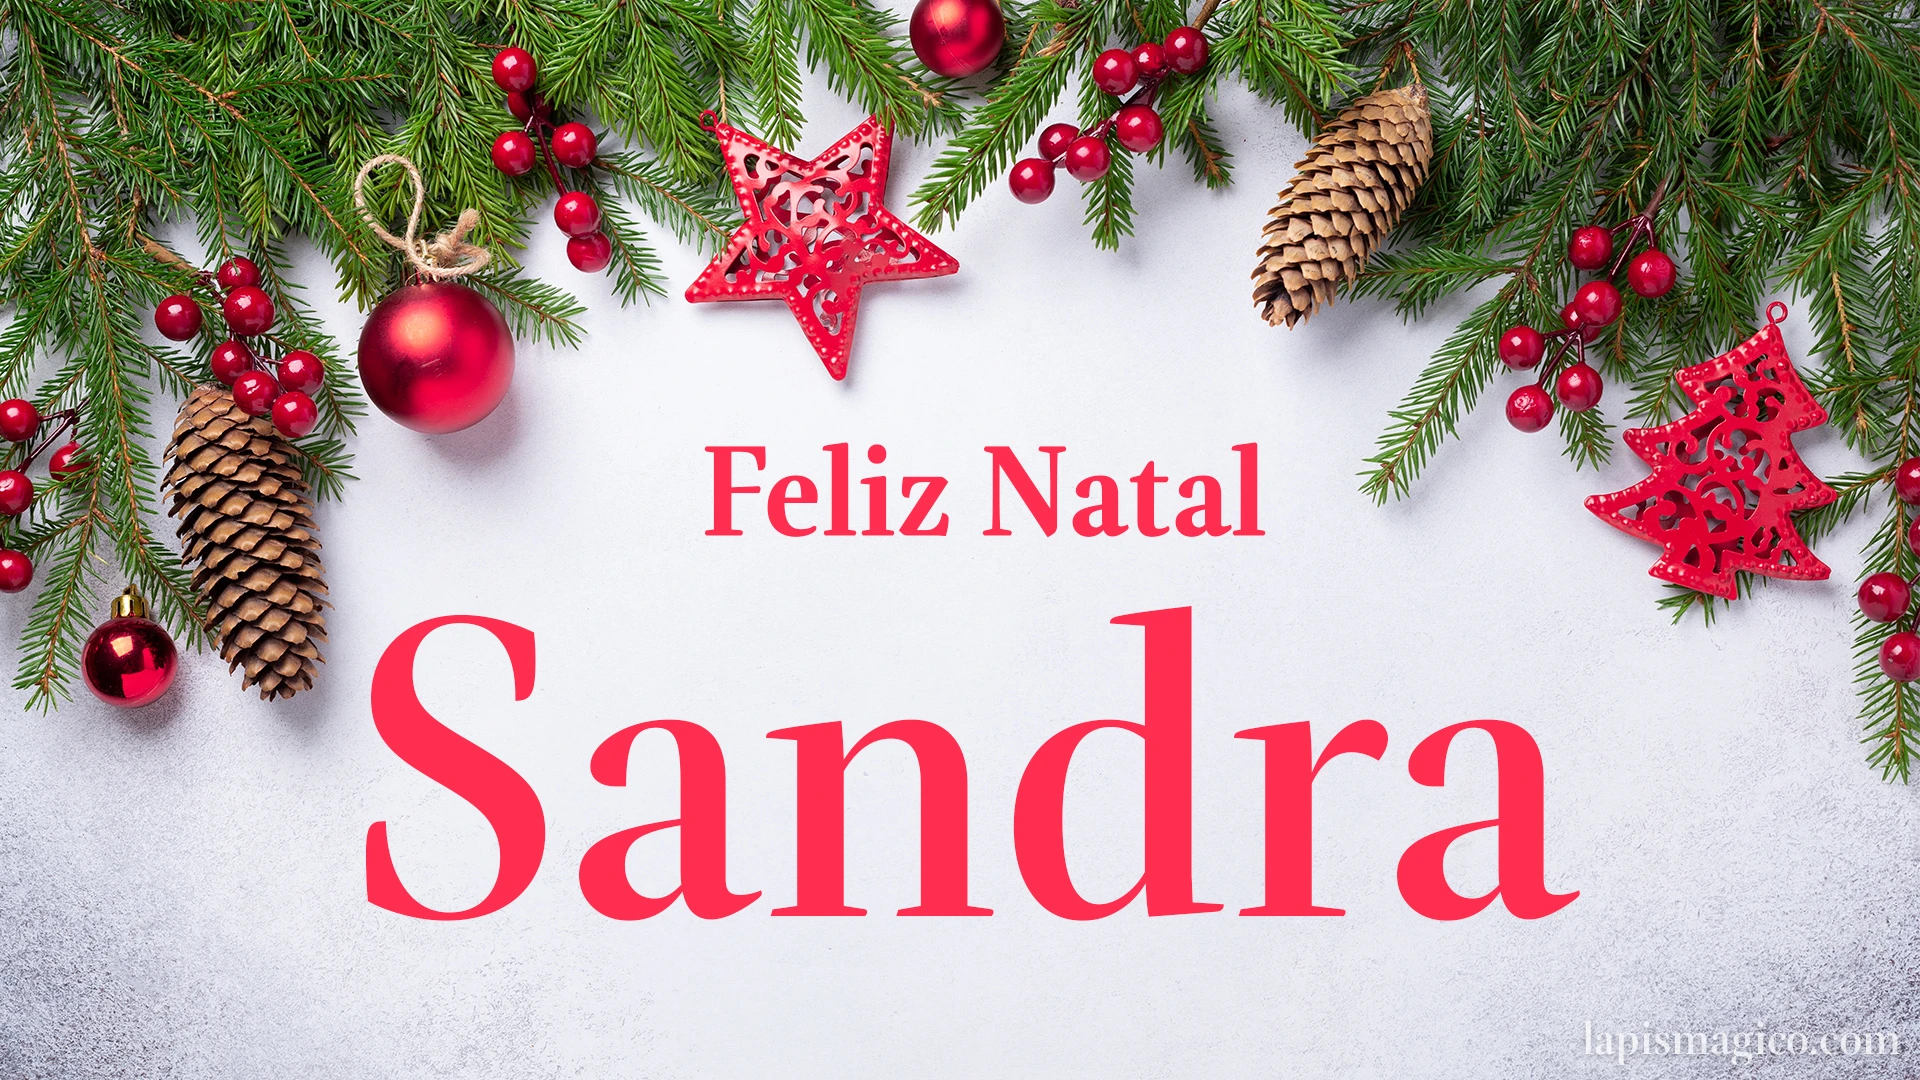 Oh Sandra, cinco postais de Feliz Natal Postal com o teu nome